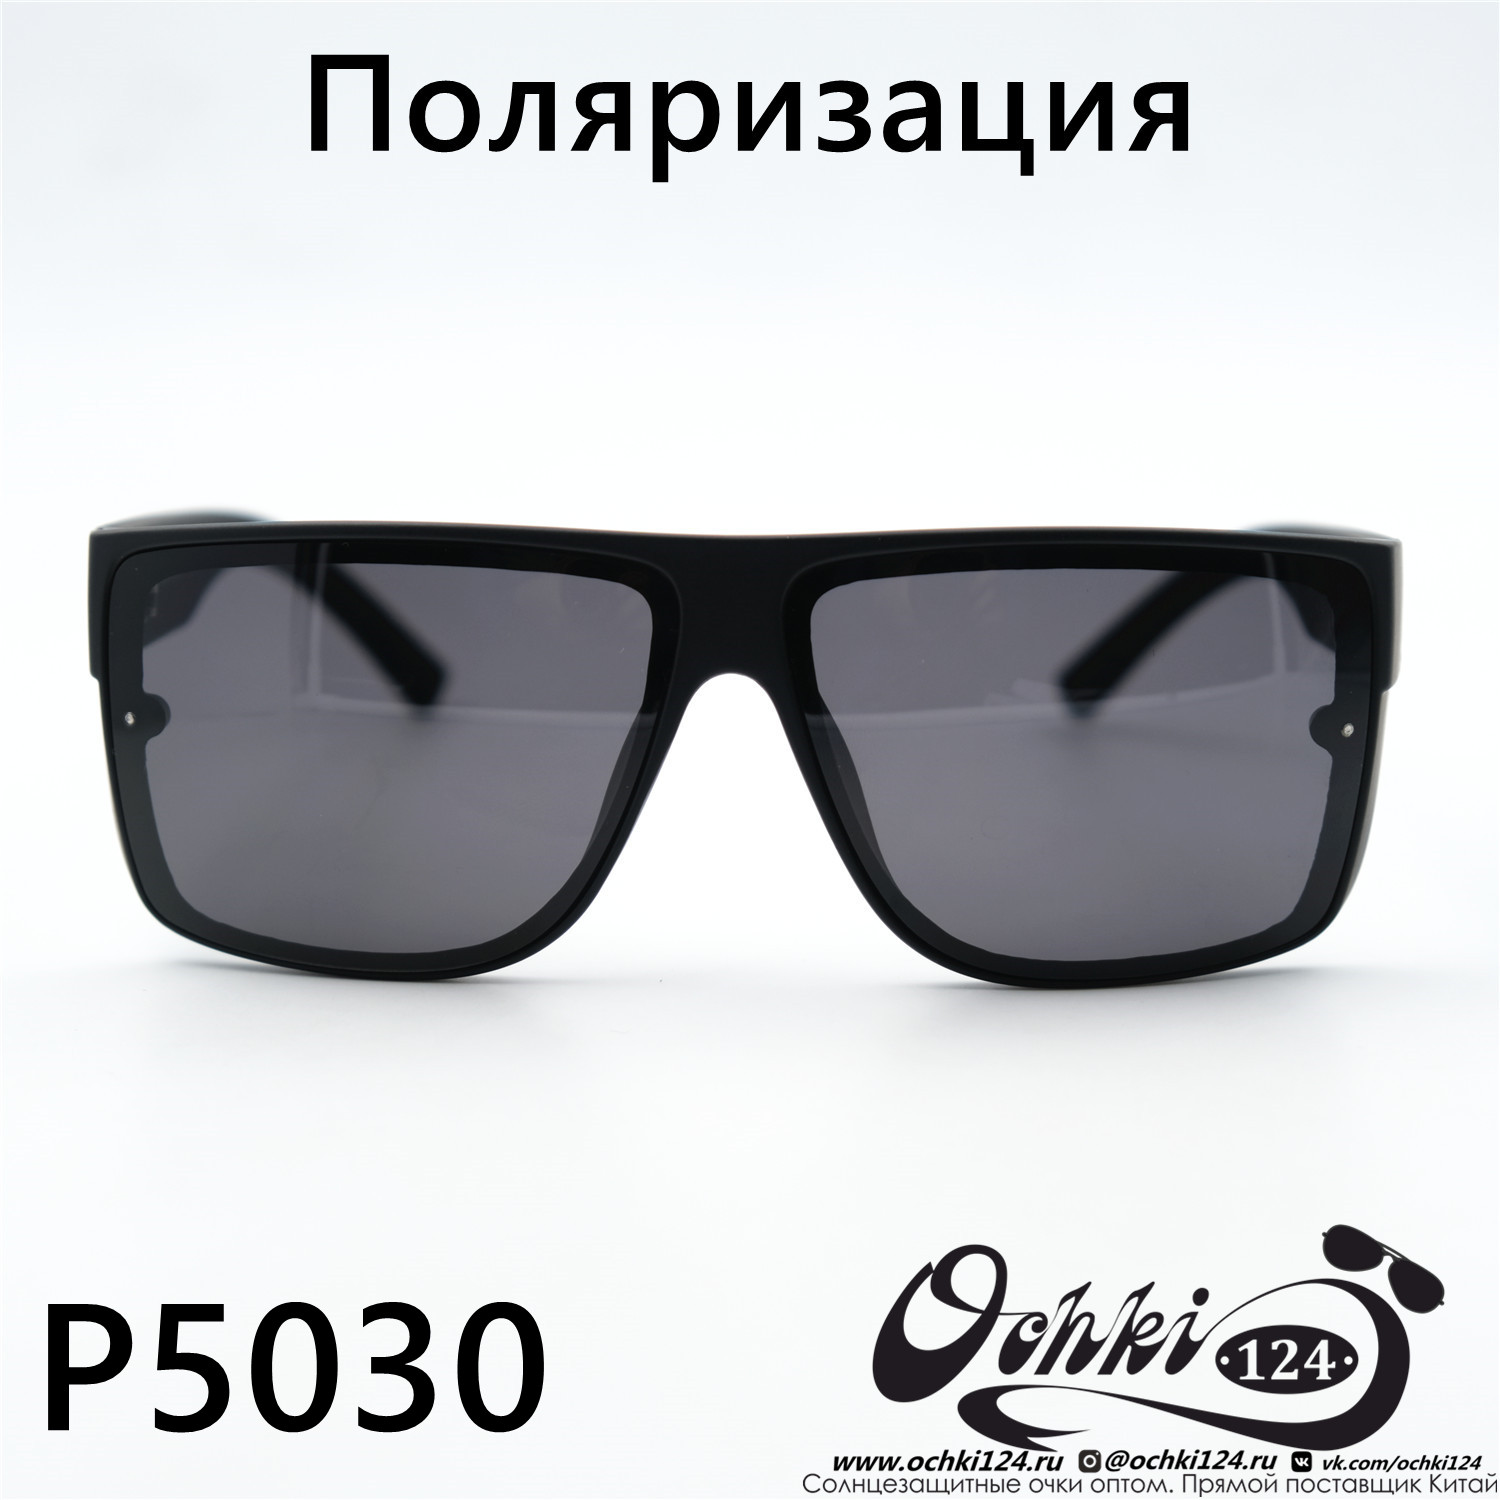  Солнцезащитные очки картинка 2023 Мужские Стандартные Maiersha P5030-C2 